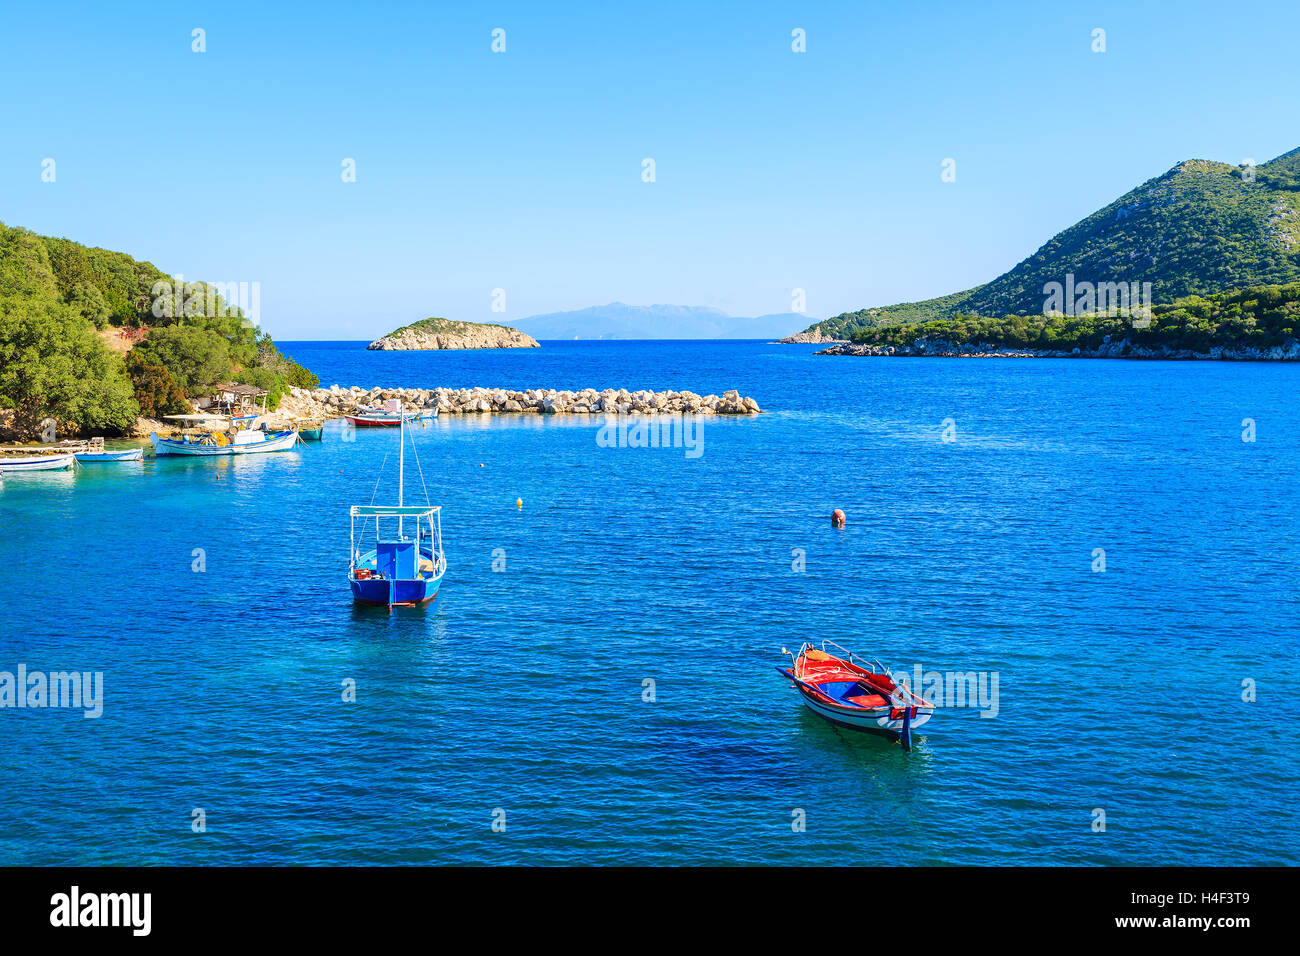 Bateaux de pêche colorés au bleu de la mer, l'île de Céphalonie, Grèce Banque D'Images